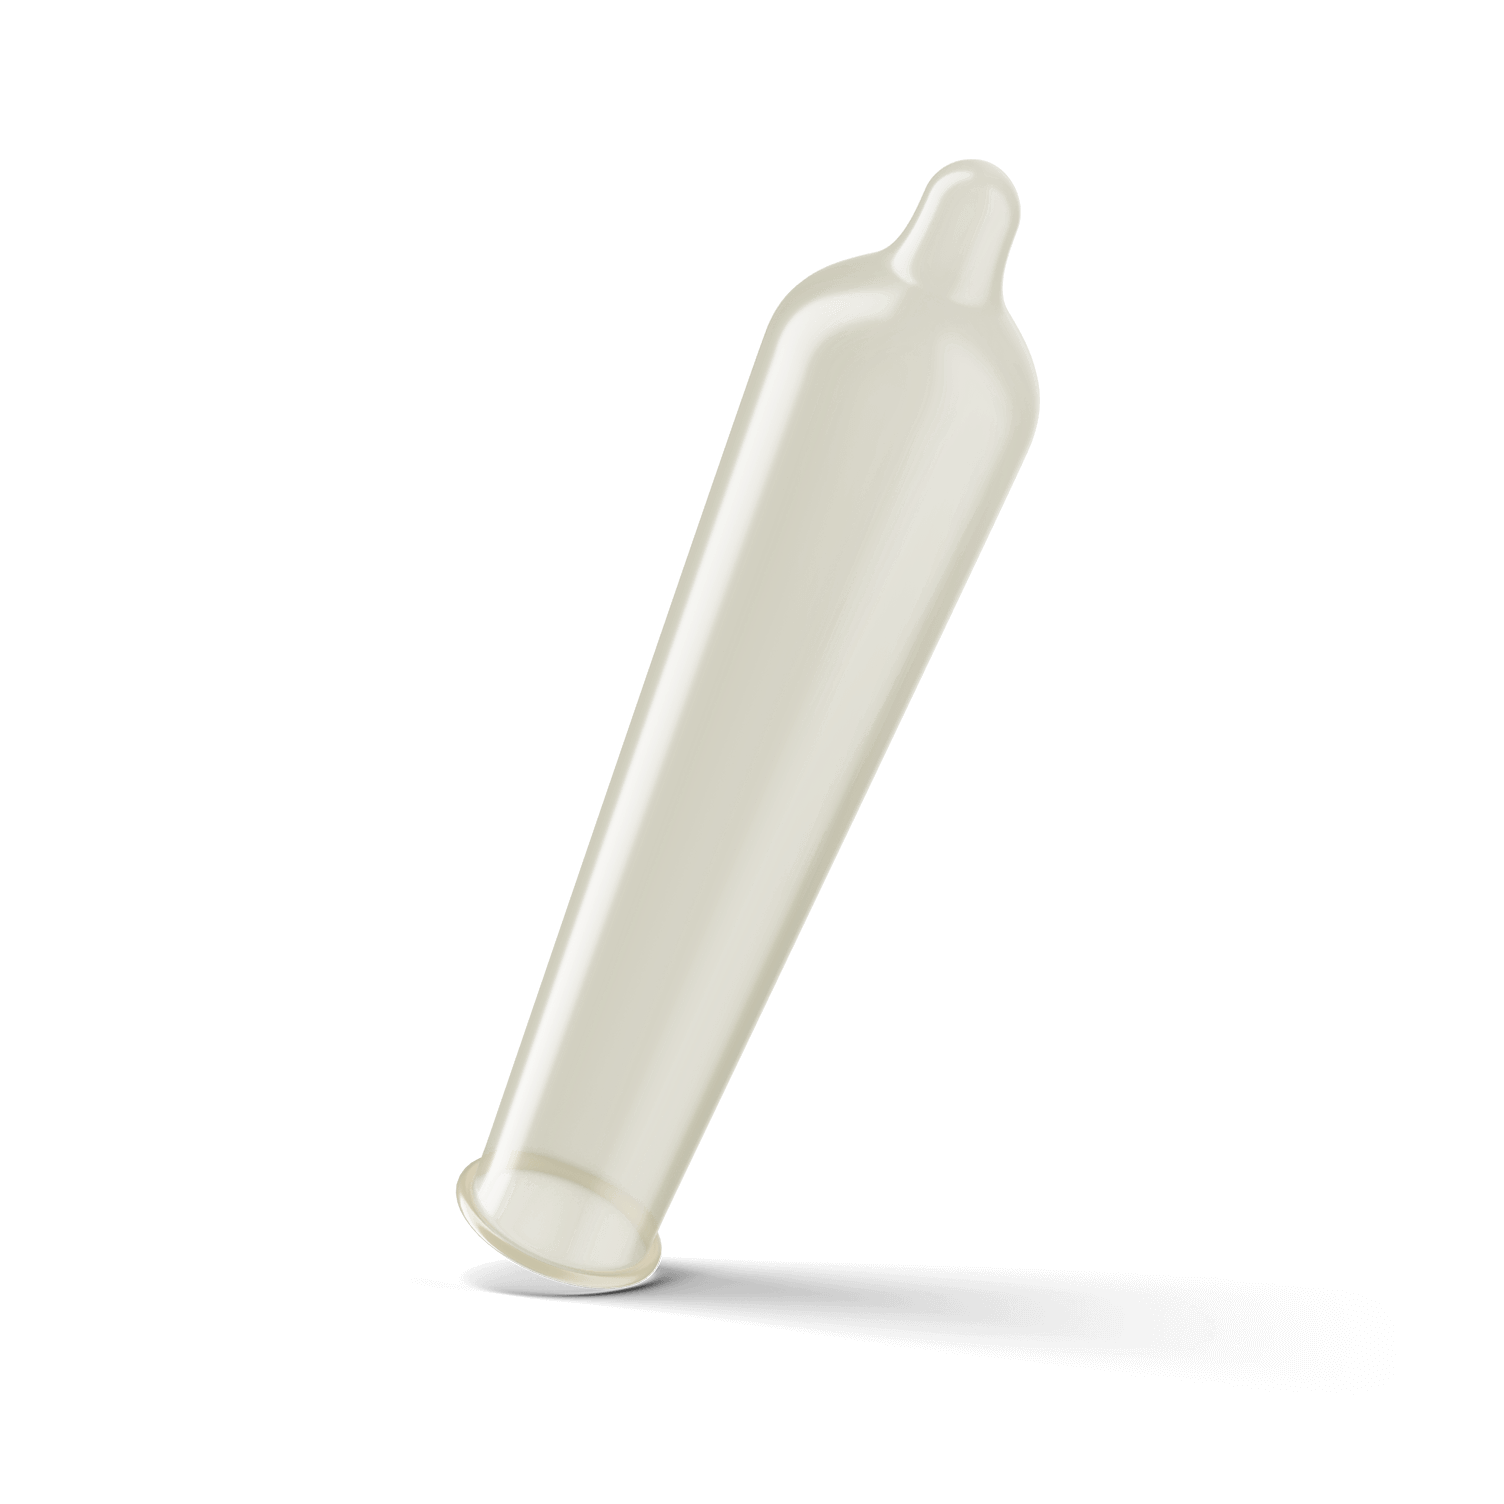 TROJAN Magnum XL Lubricated Premium Latex Condoms 12 Each (Pack of 6)